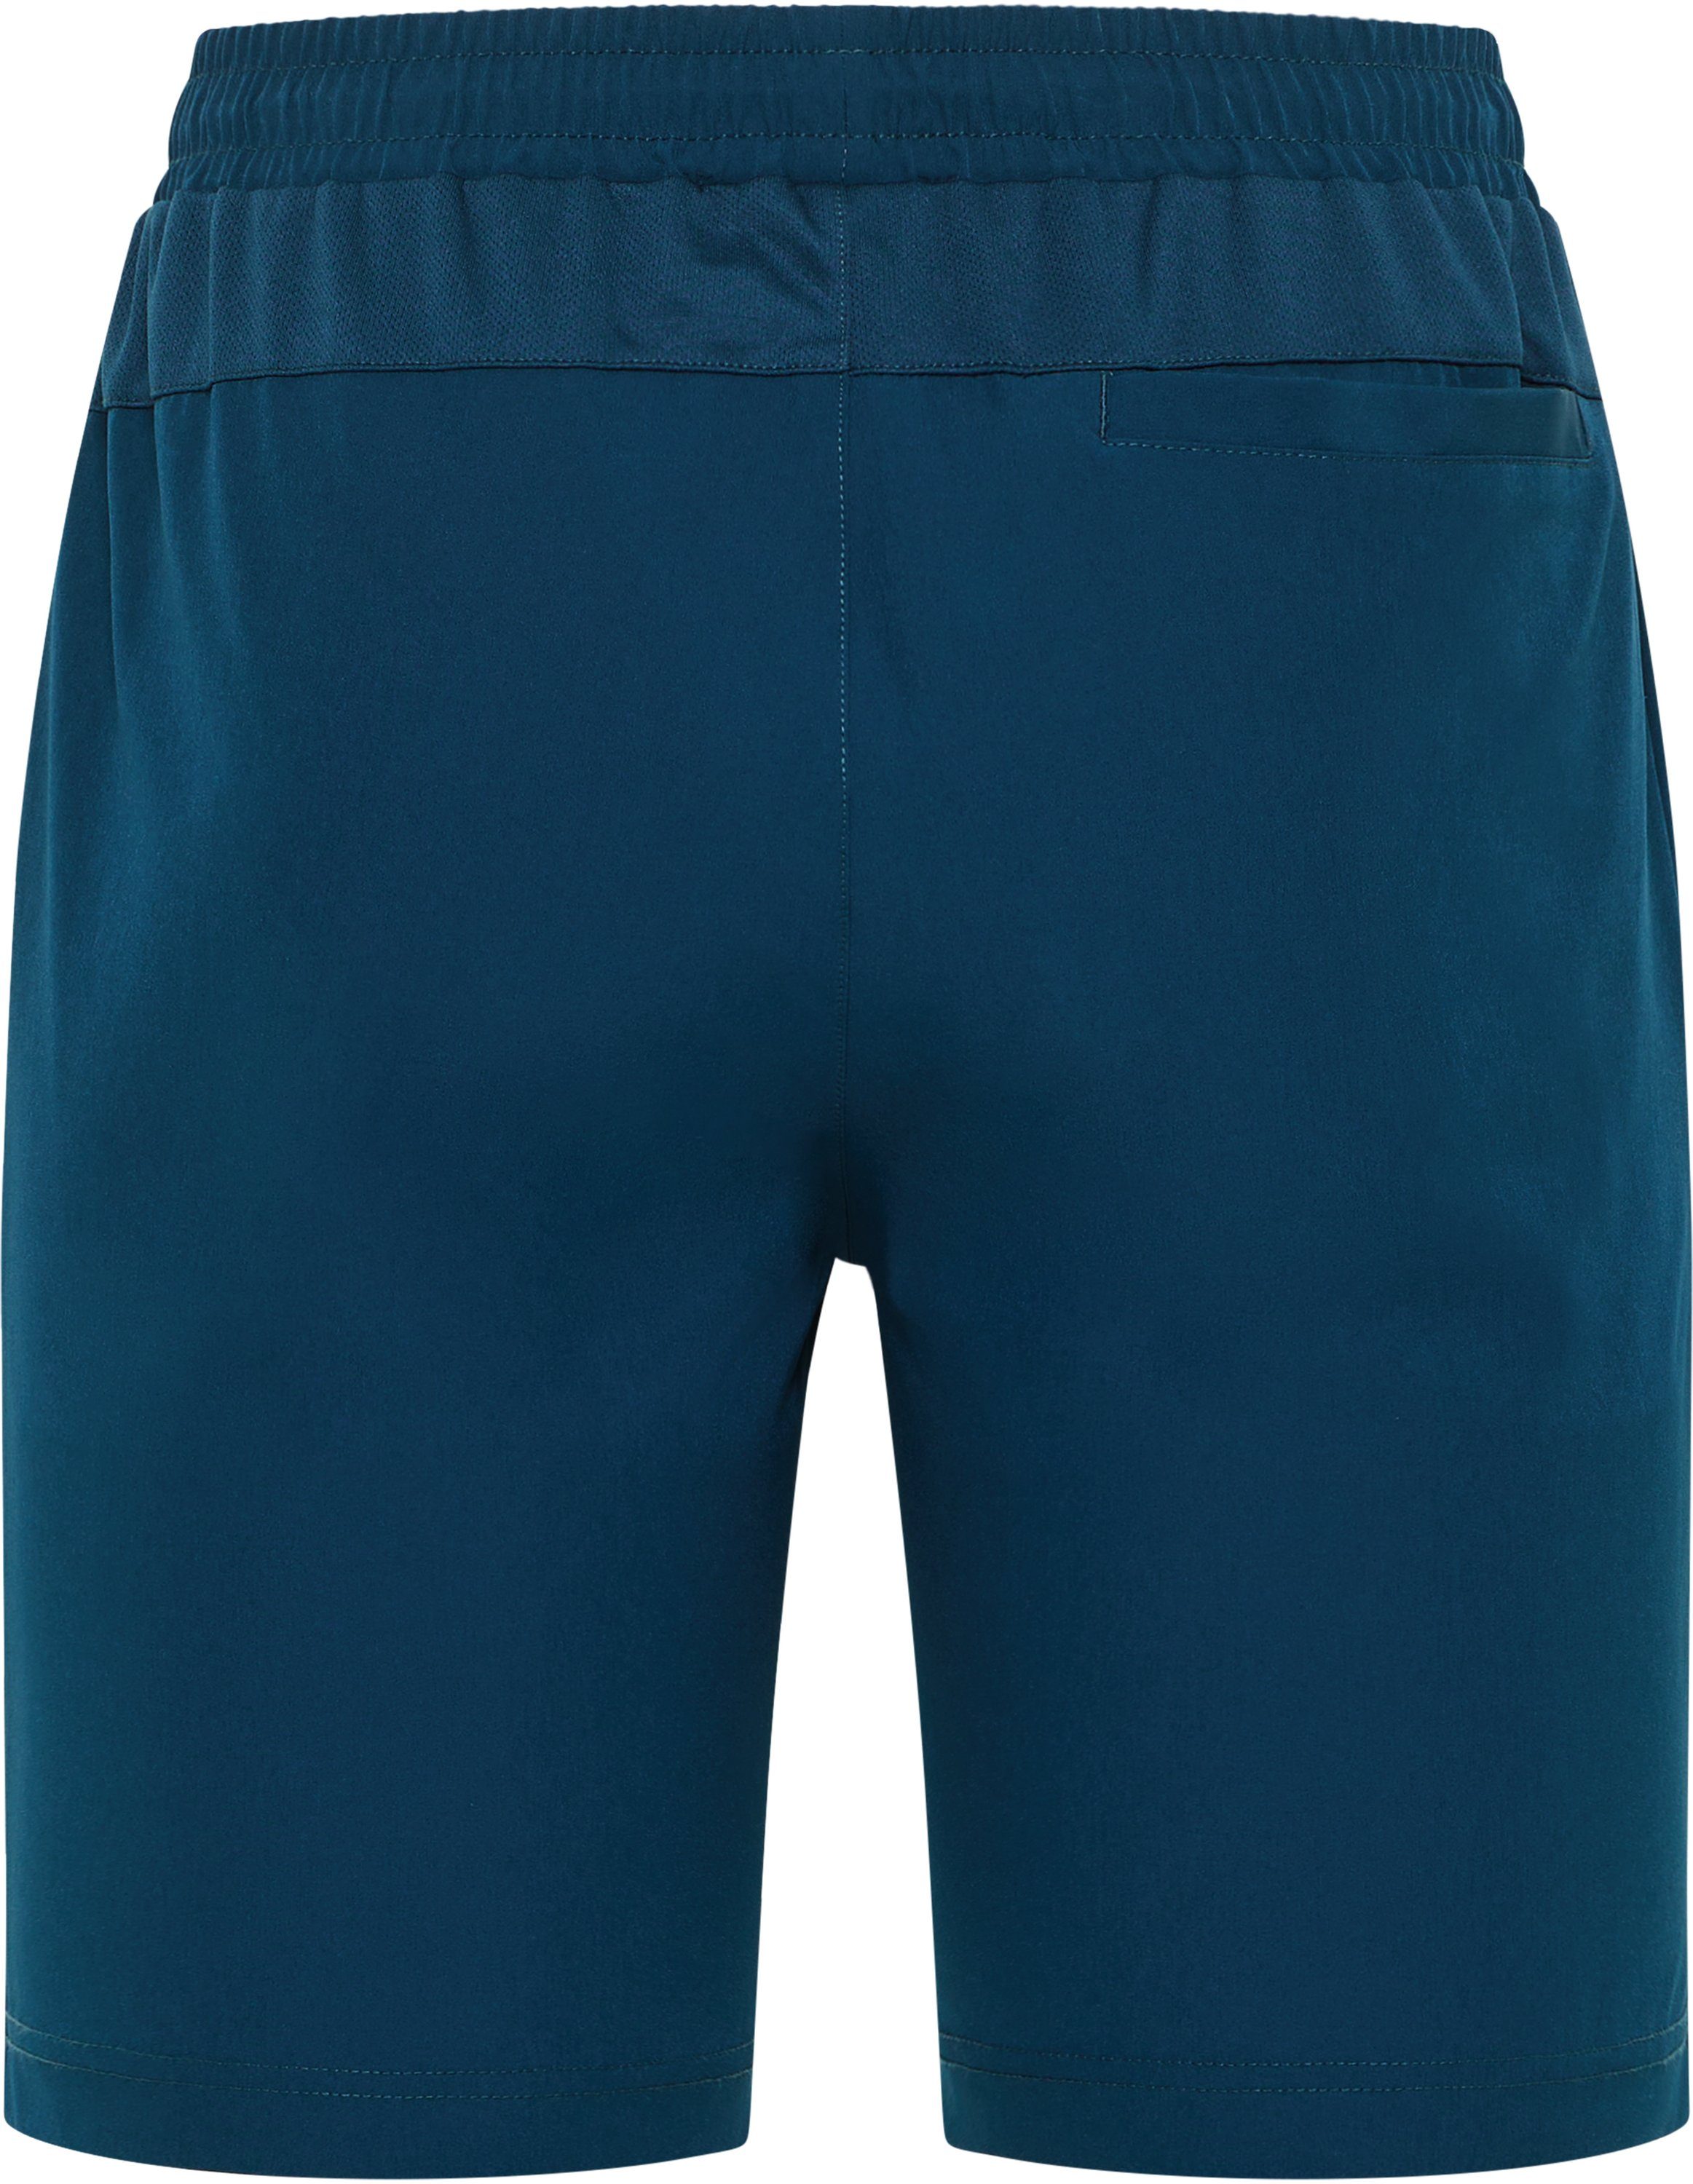 Hose Joy Kurze Sportswear MAREK space Trainingsshorts blue